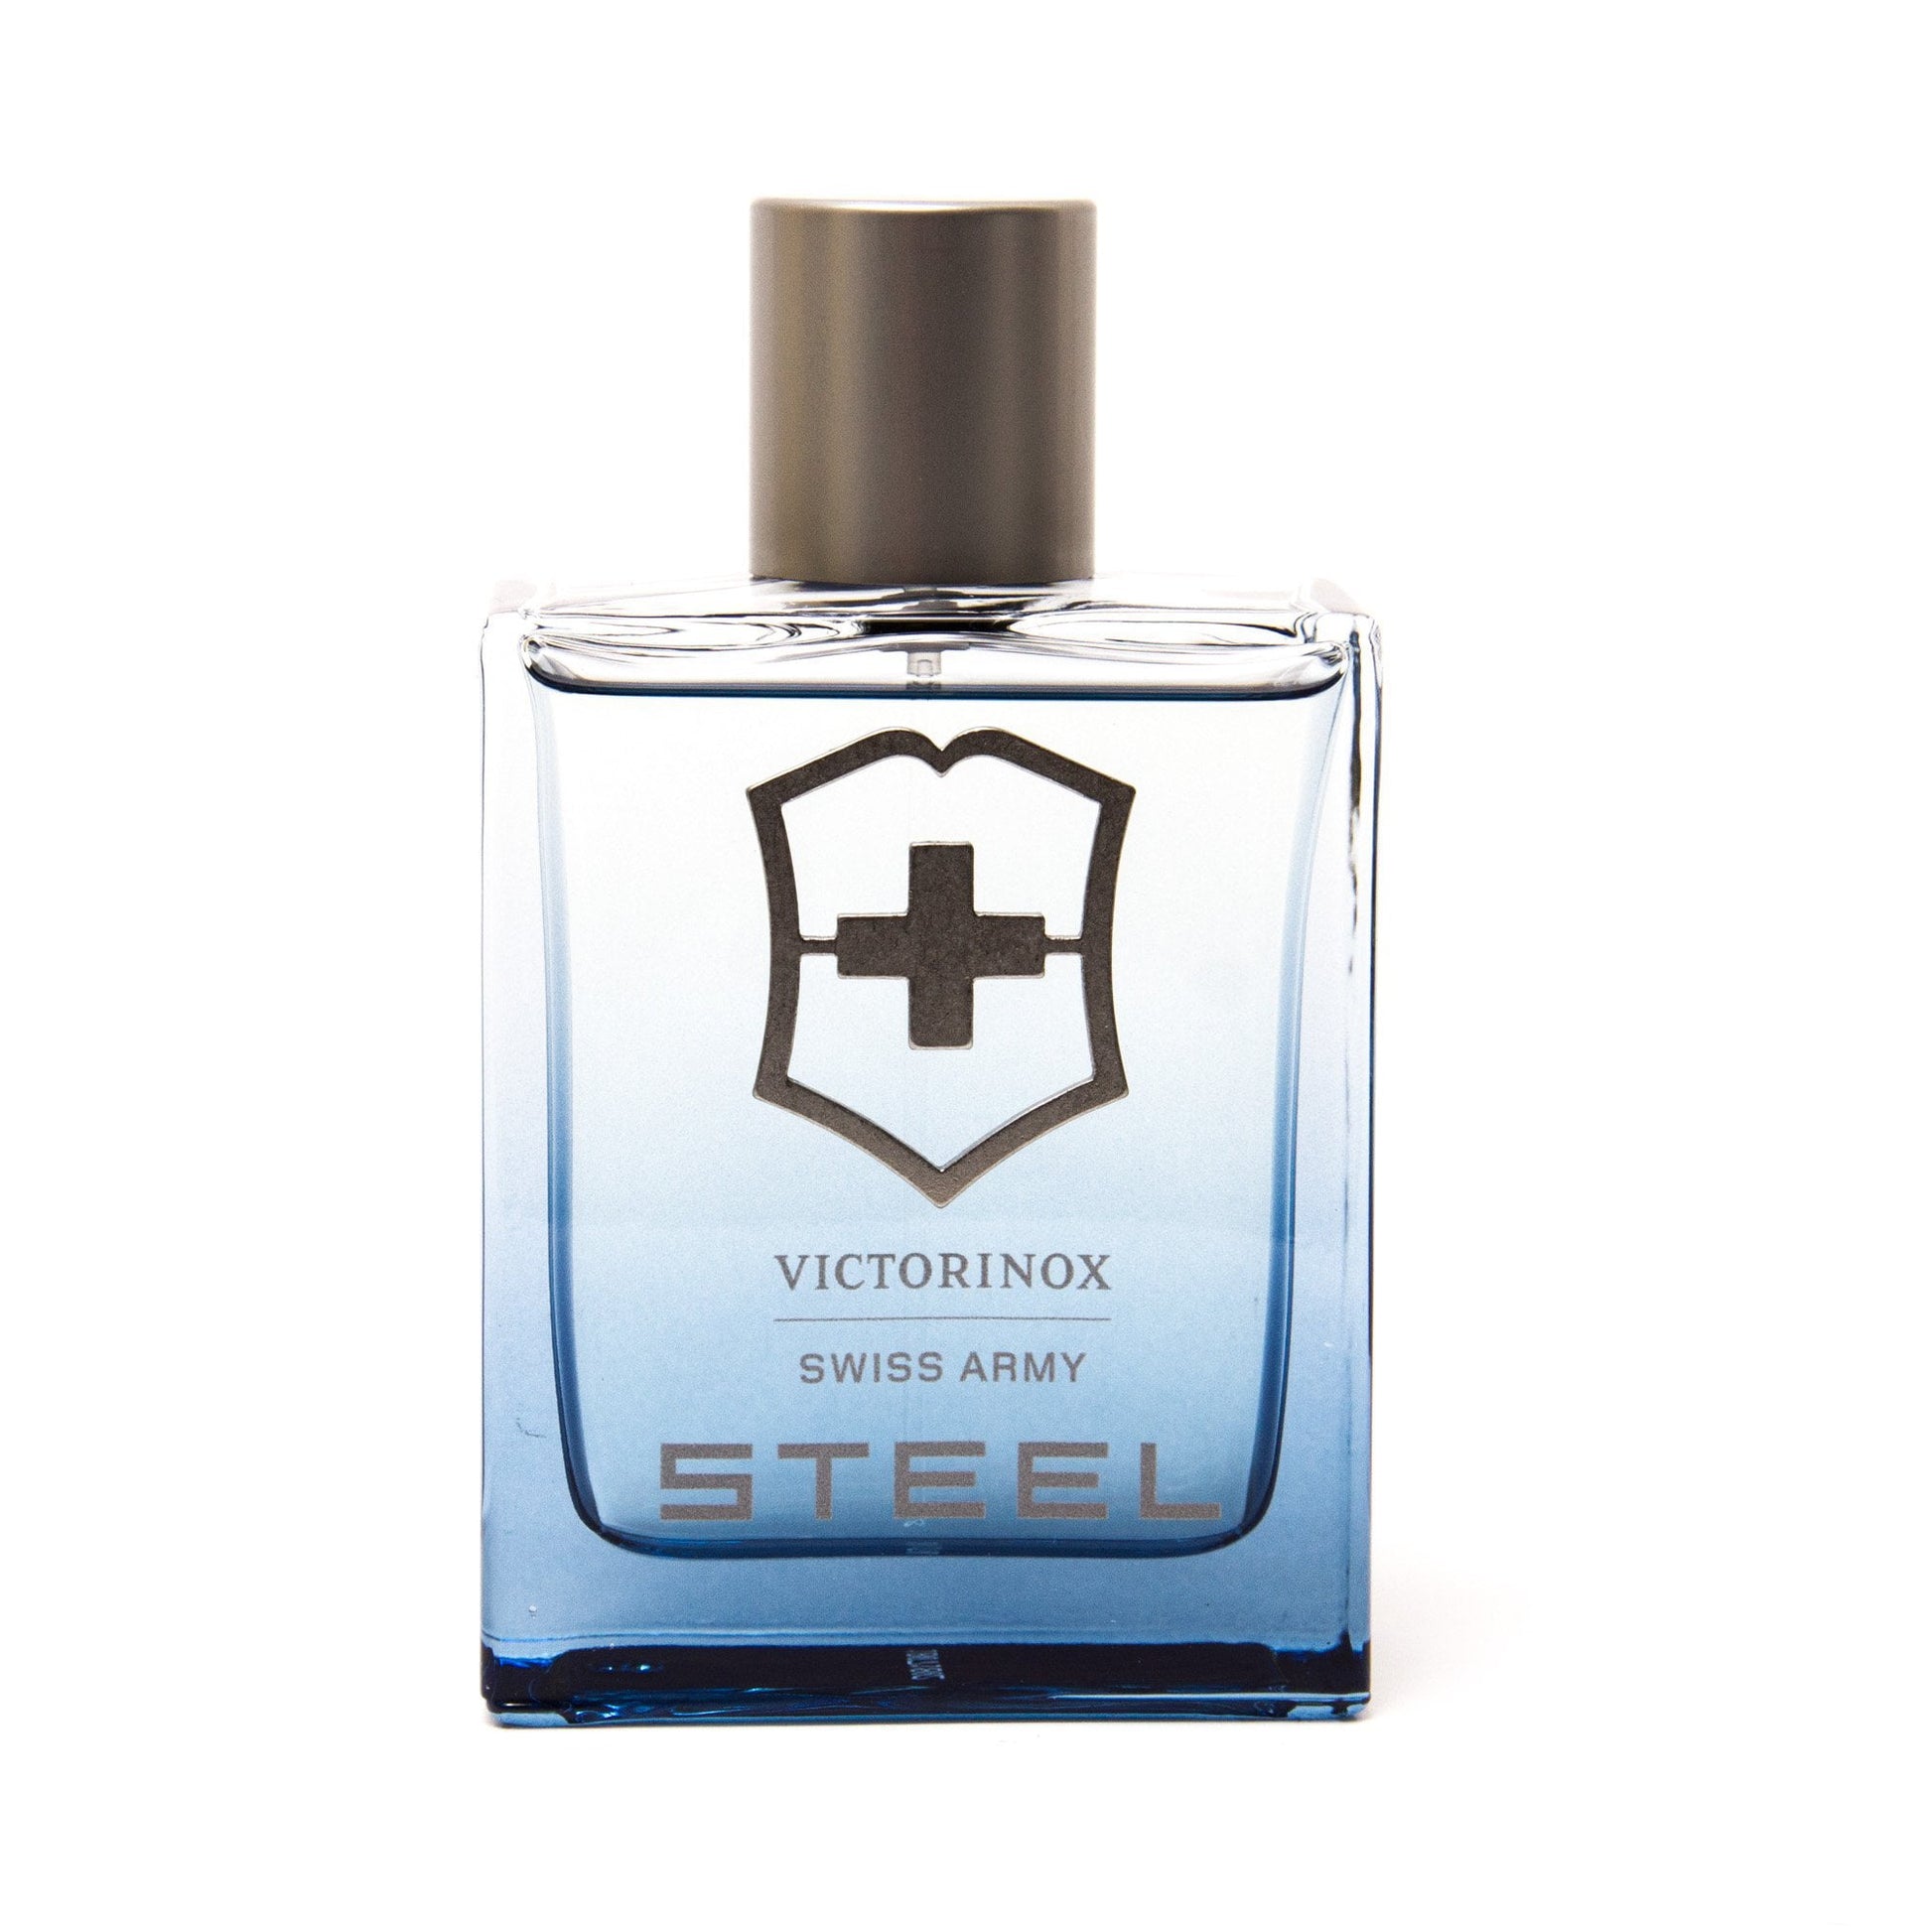 Steel Swiss Army Eau de Toilette Spray for Men by Victorinox, Product image 2